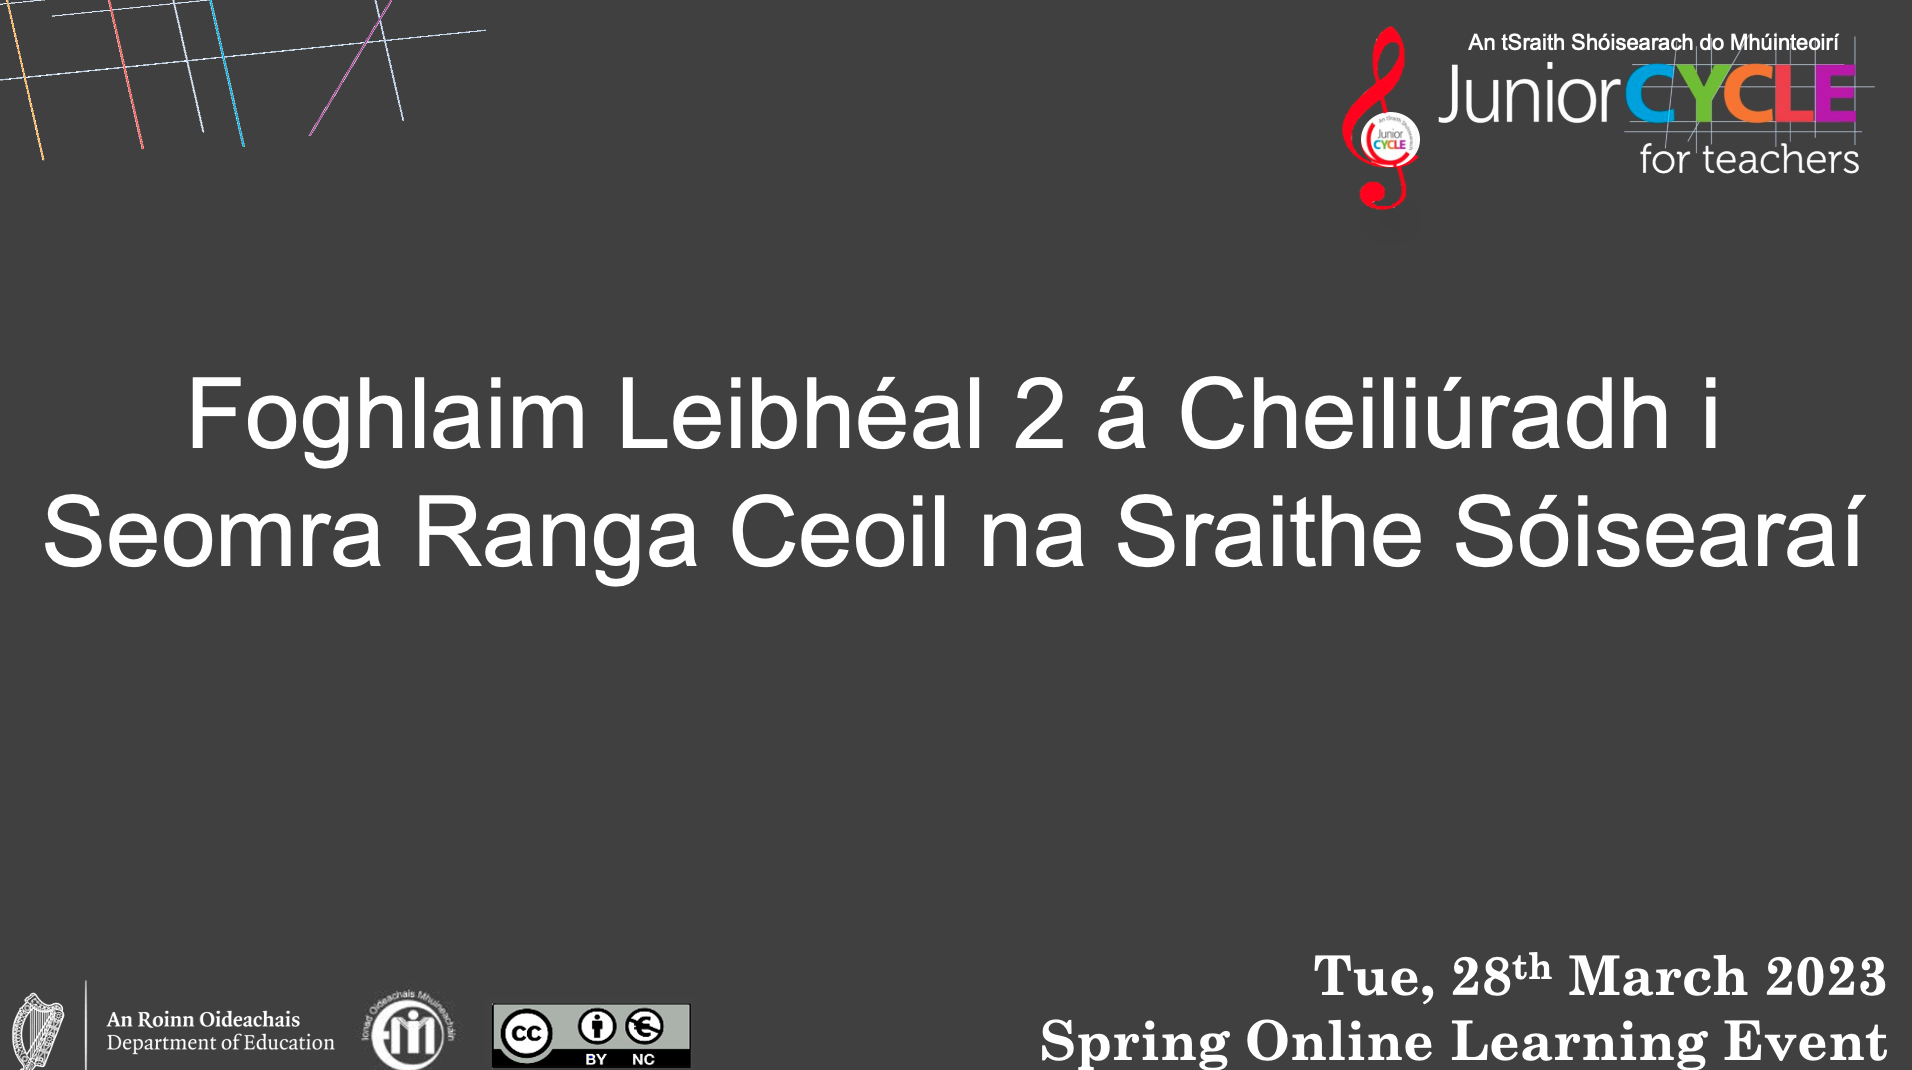 Foghlaim Leibhéal 2 á Cheiliúradh i Seomra Ranga Ceoil na Sraithe Sóisearaí